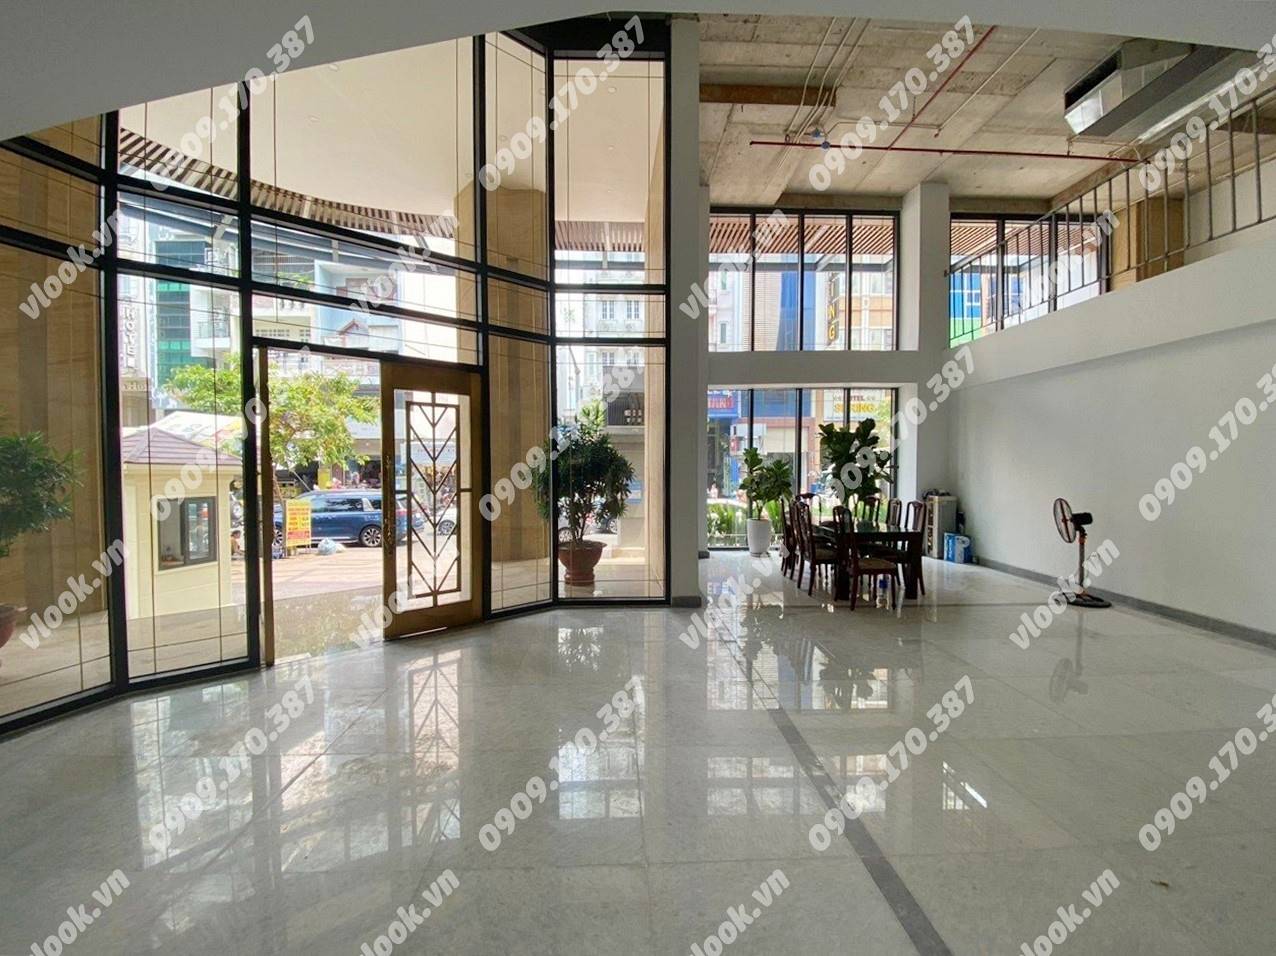 Cao ốc văn phòng cho thuê tòa nhà Financiat Building, 34 Bạch Đằng, Phường 2, Quận Tân Bình, TP.HCM - vlook.vn